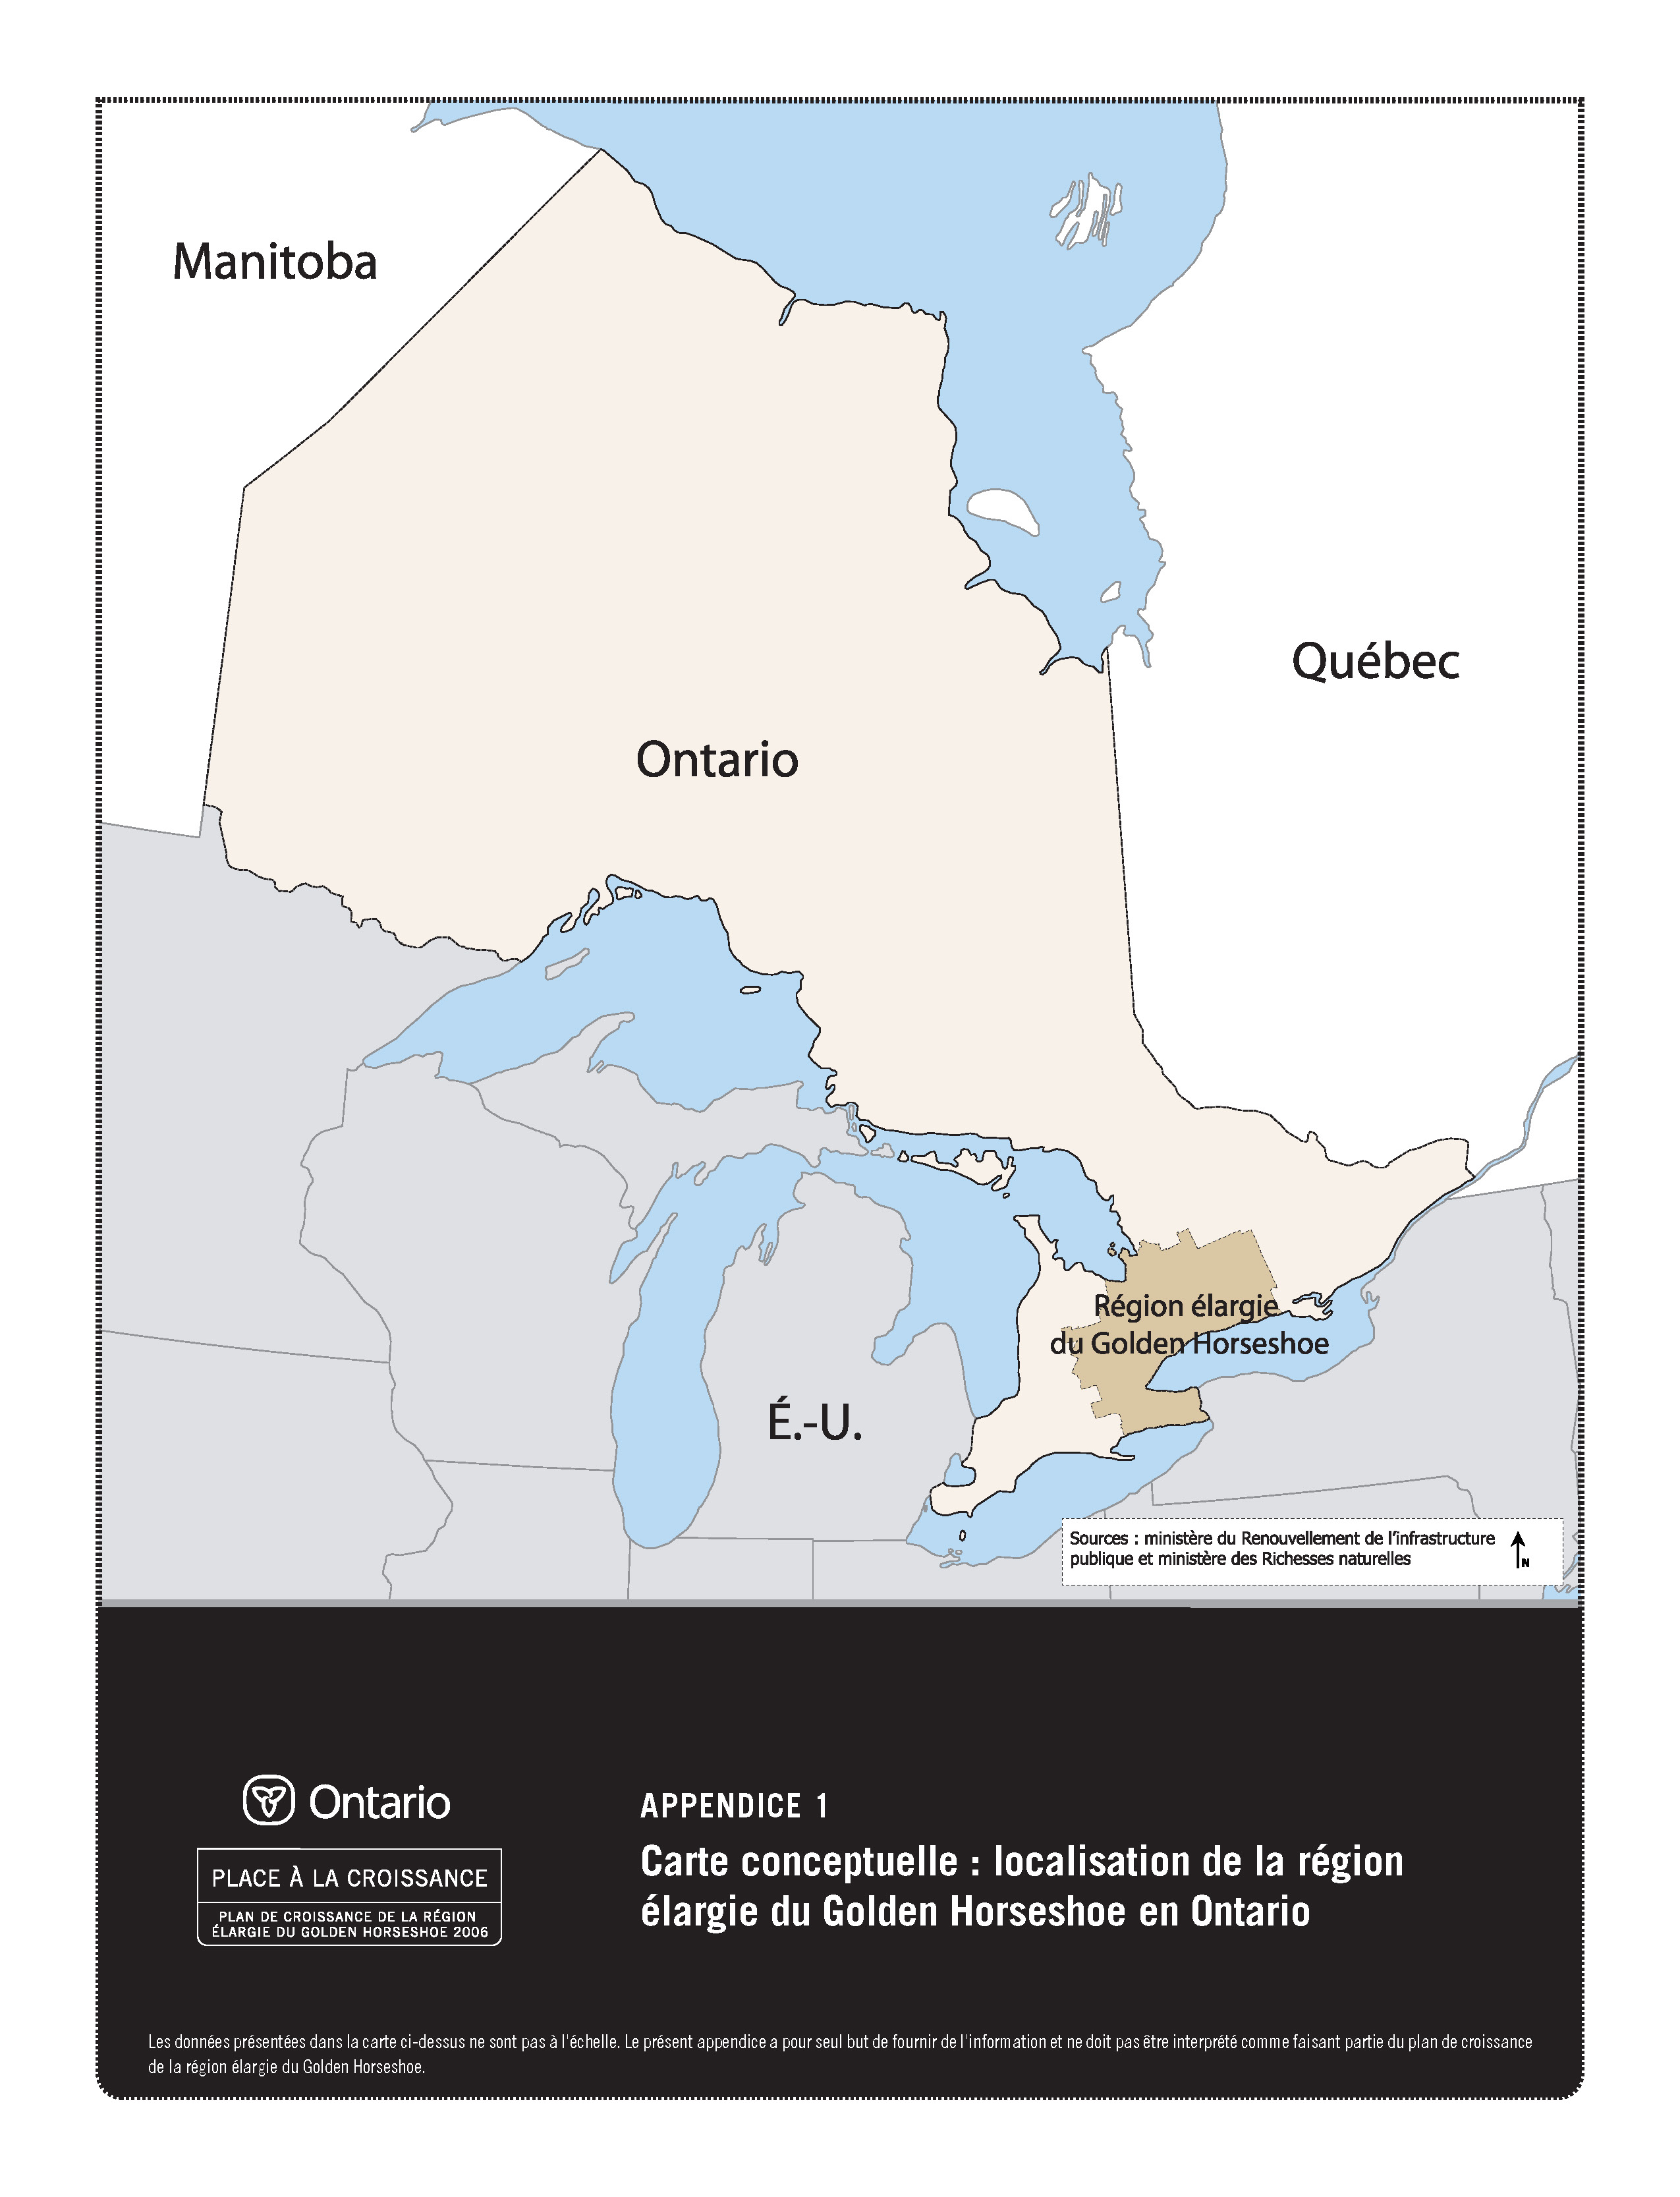 Carte conceptuelle: localisation de la région élargie du Golden Horseshoe en Ontario